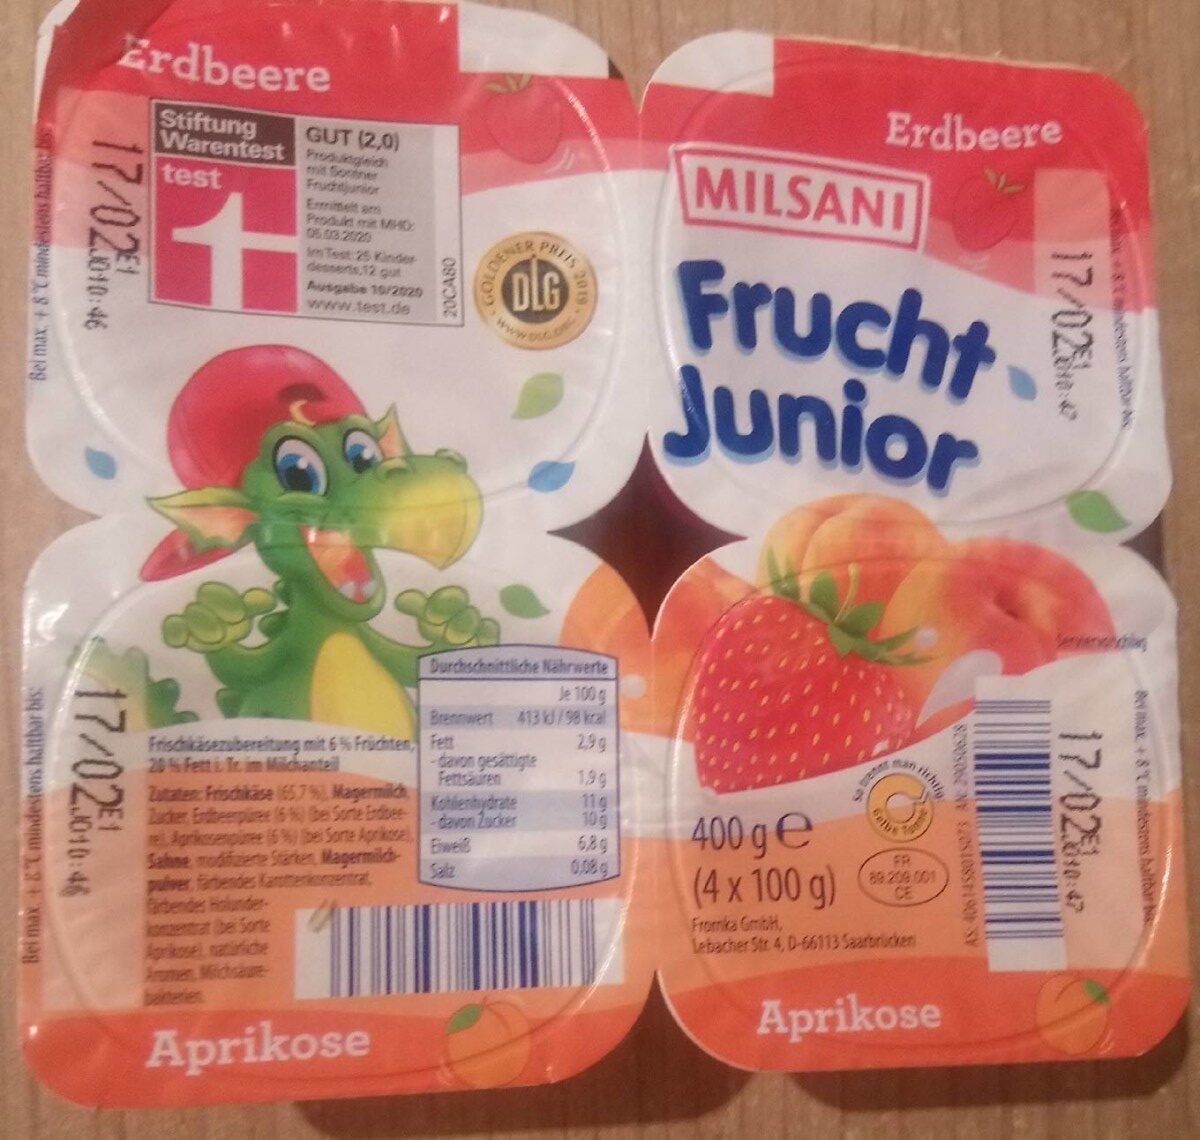 Frucht-Junior - Erdbeere / Aprikose - Product - de